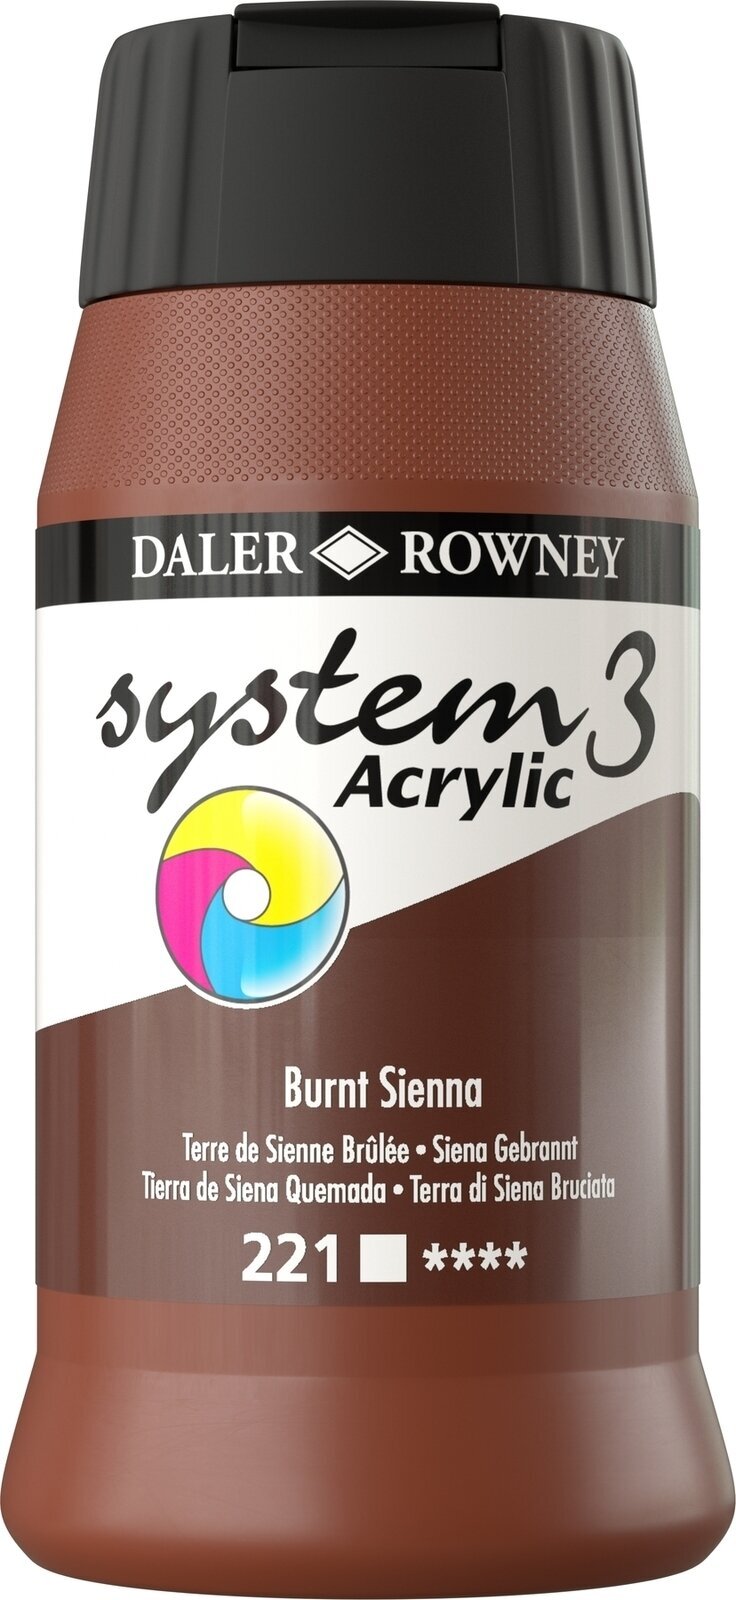 Akrylová farba Daler Rowney System3 Akrylová farba Burnt Sienna 500 ml 1 ks